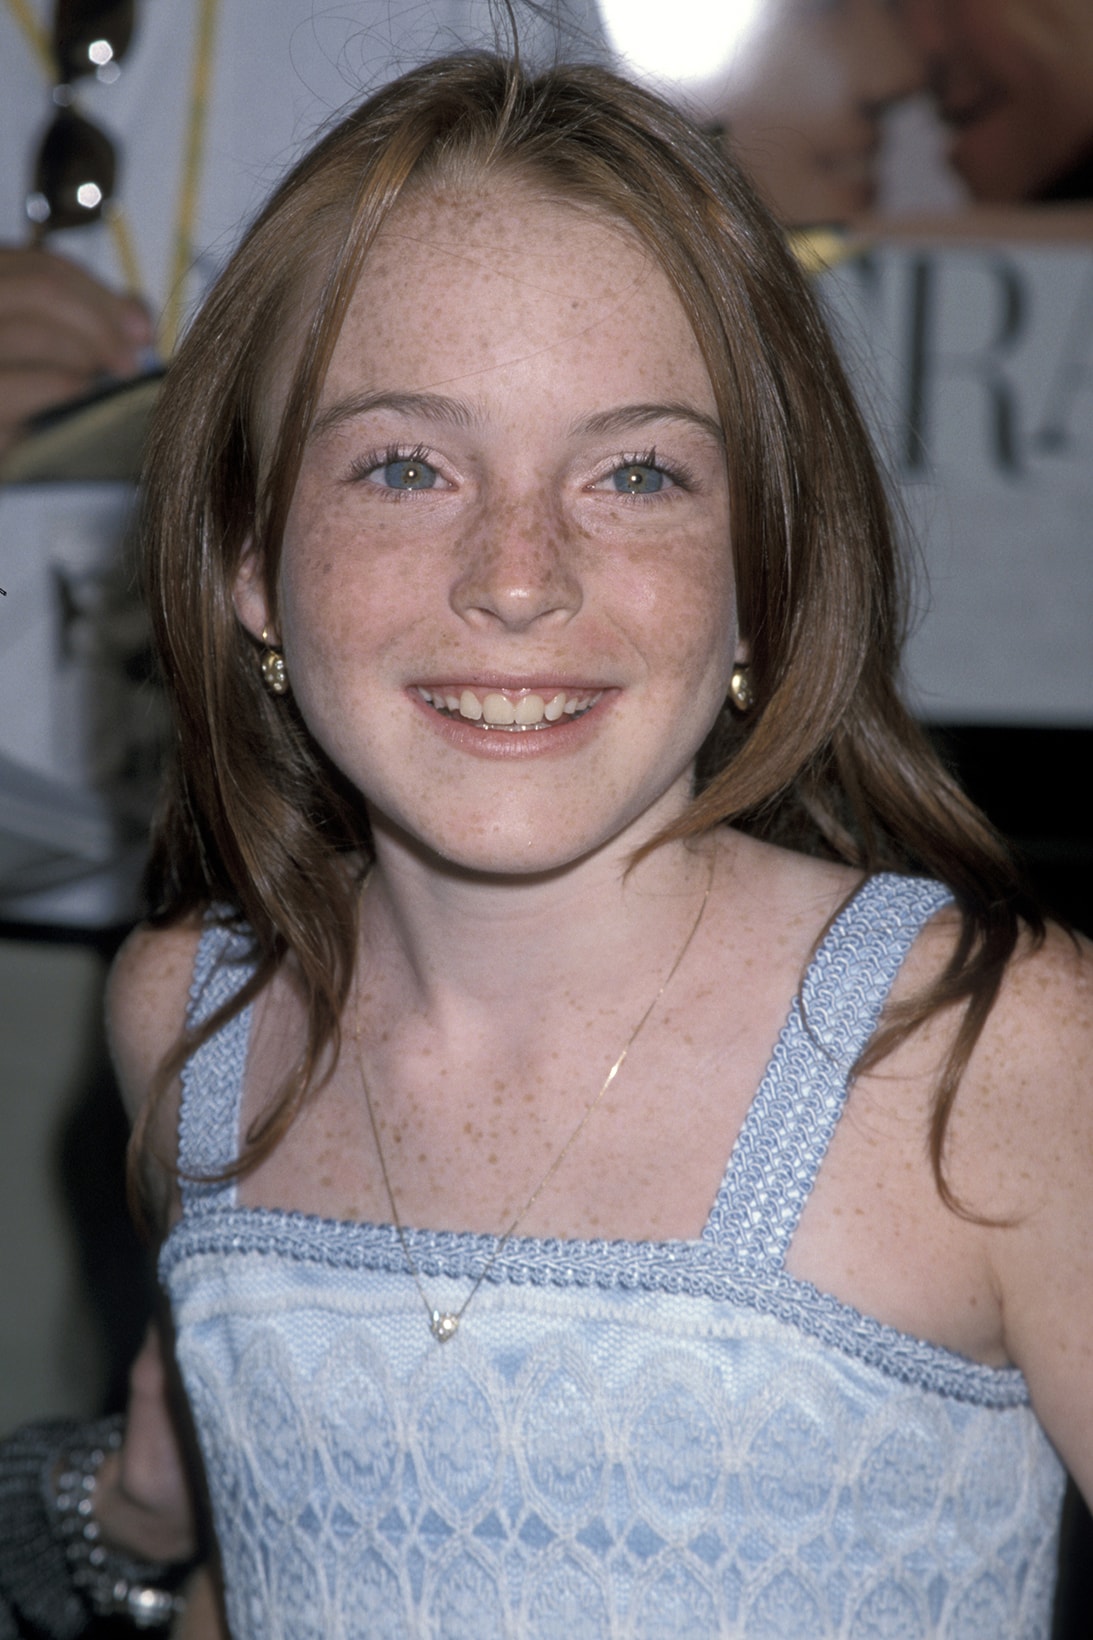 Lindsay Lohan The Parent Trap Actress 